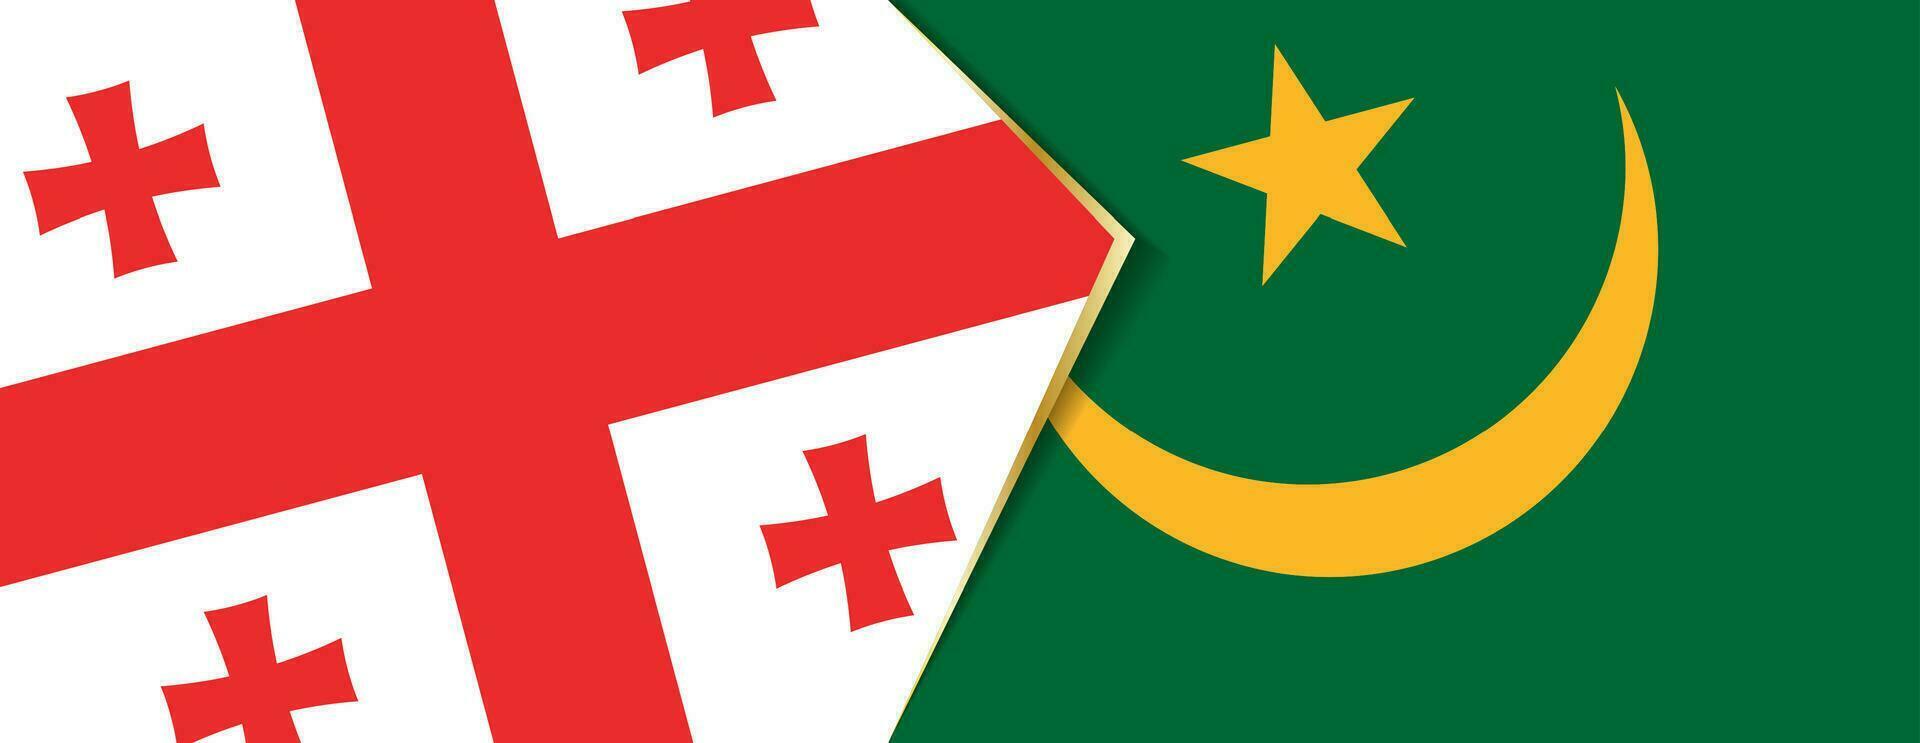 Georgia y Mauritania banderas, dos vector banderas